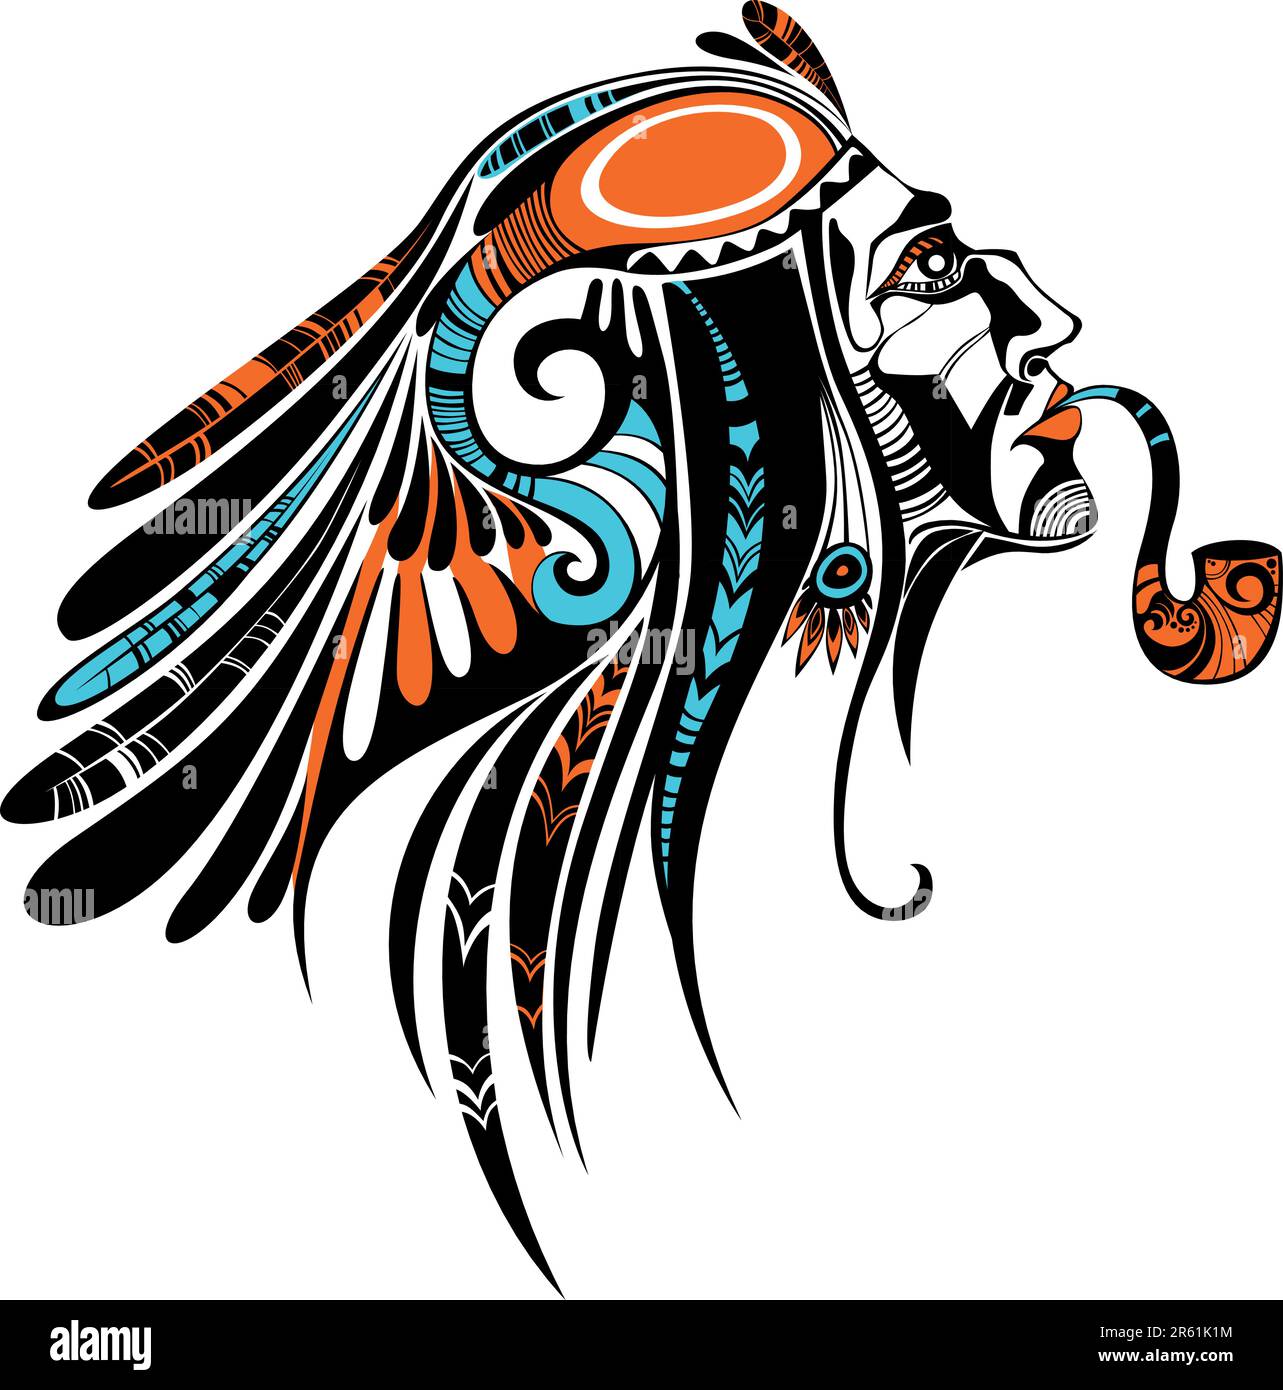 illustration vectorielle d'une culture tribale américaine Illustration de Vecteur